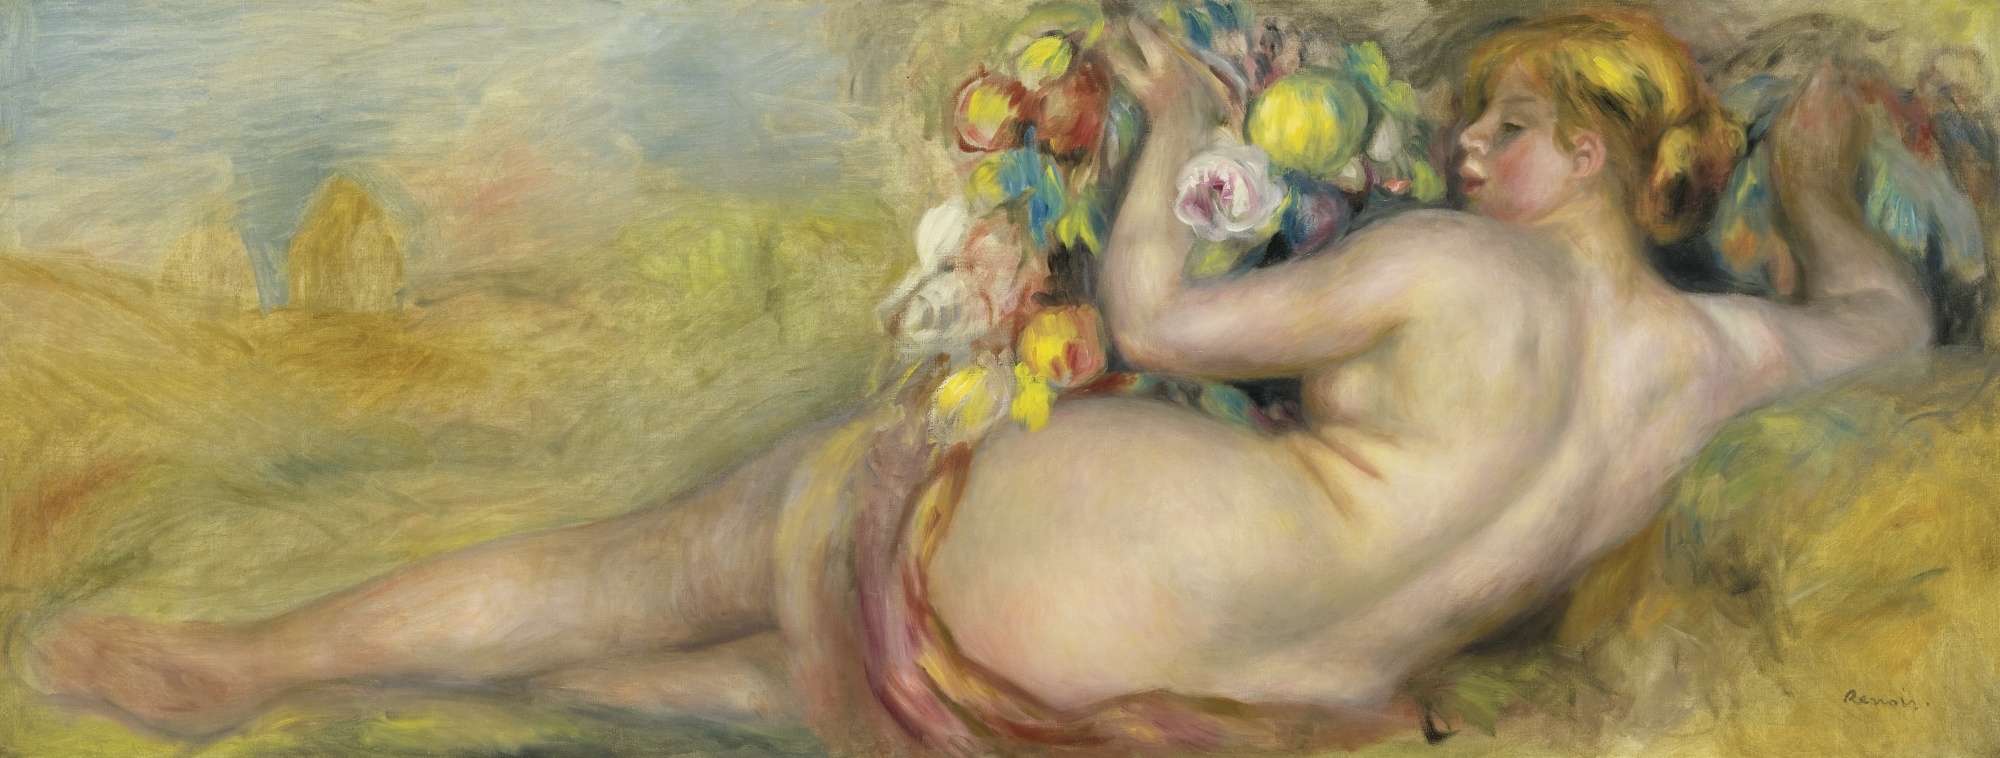 Ренуар картины женщин голых